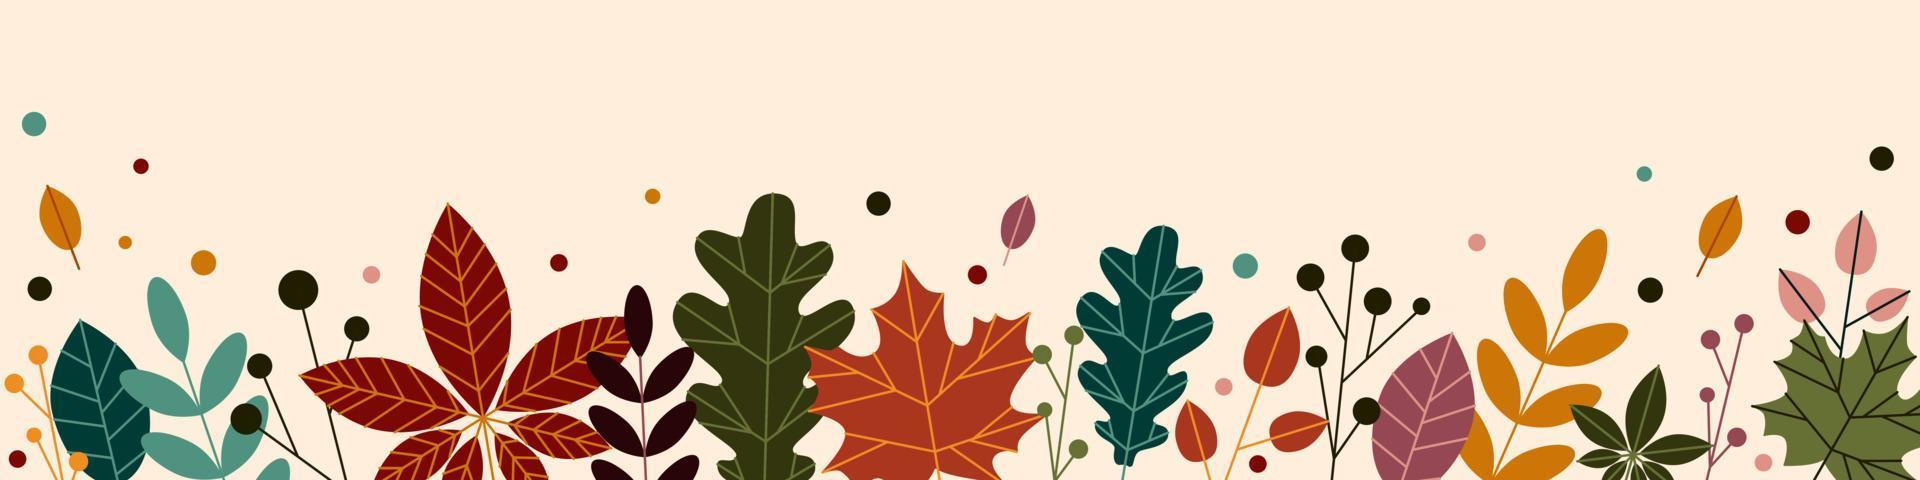 horizontales Banner, floraler Hintergrund mit bunten Herbstblättern und Pflanzen. botanische flache vektorillustration des fallens auf hellem hintergrund. vektor